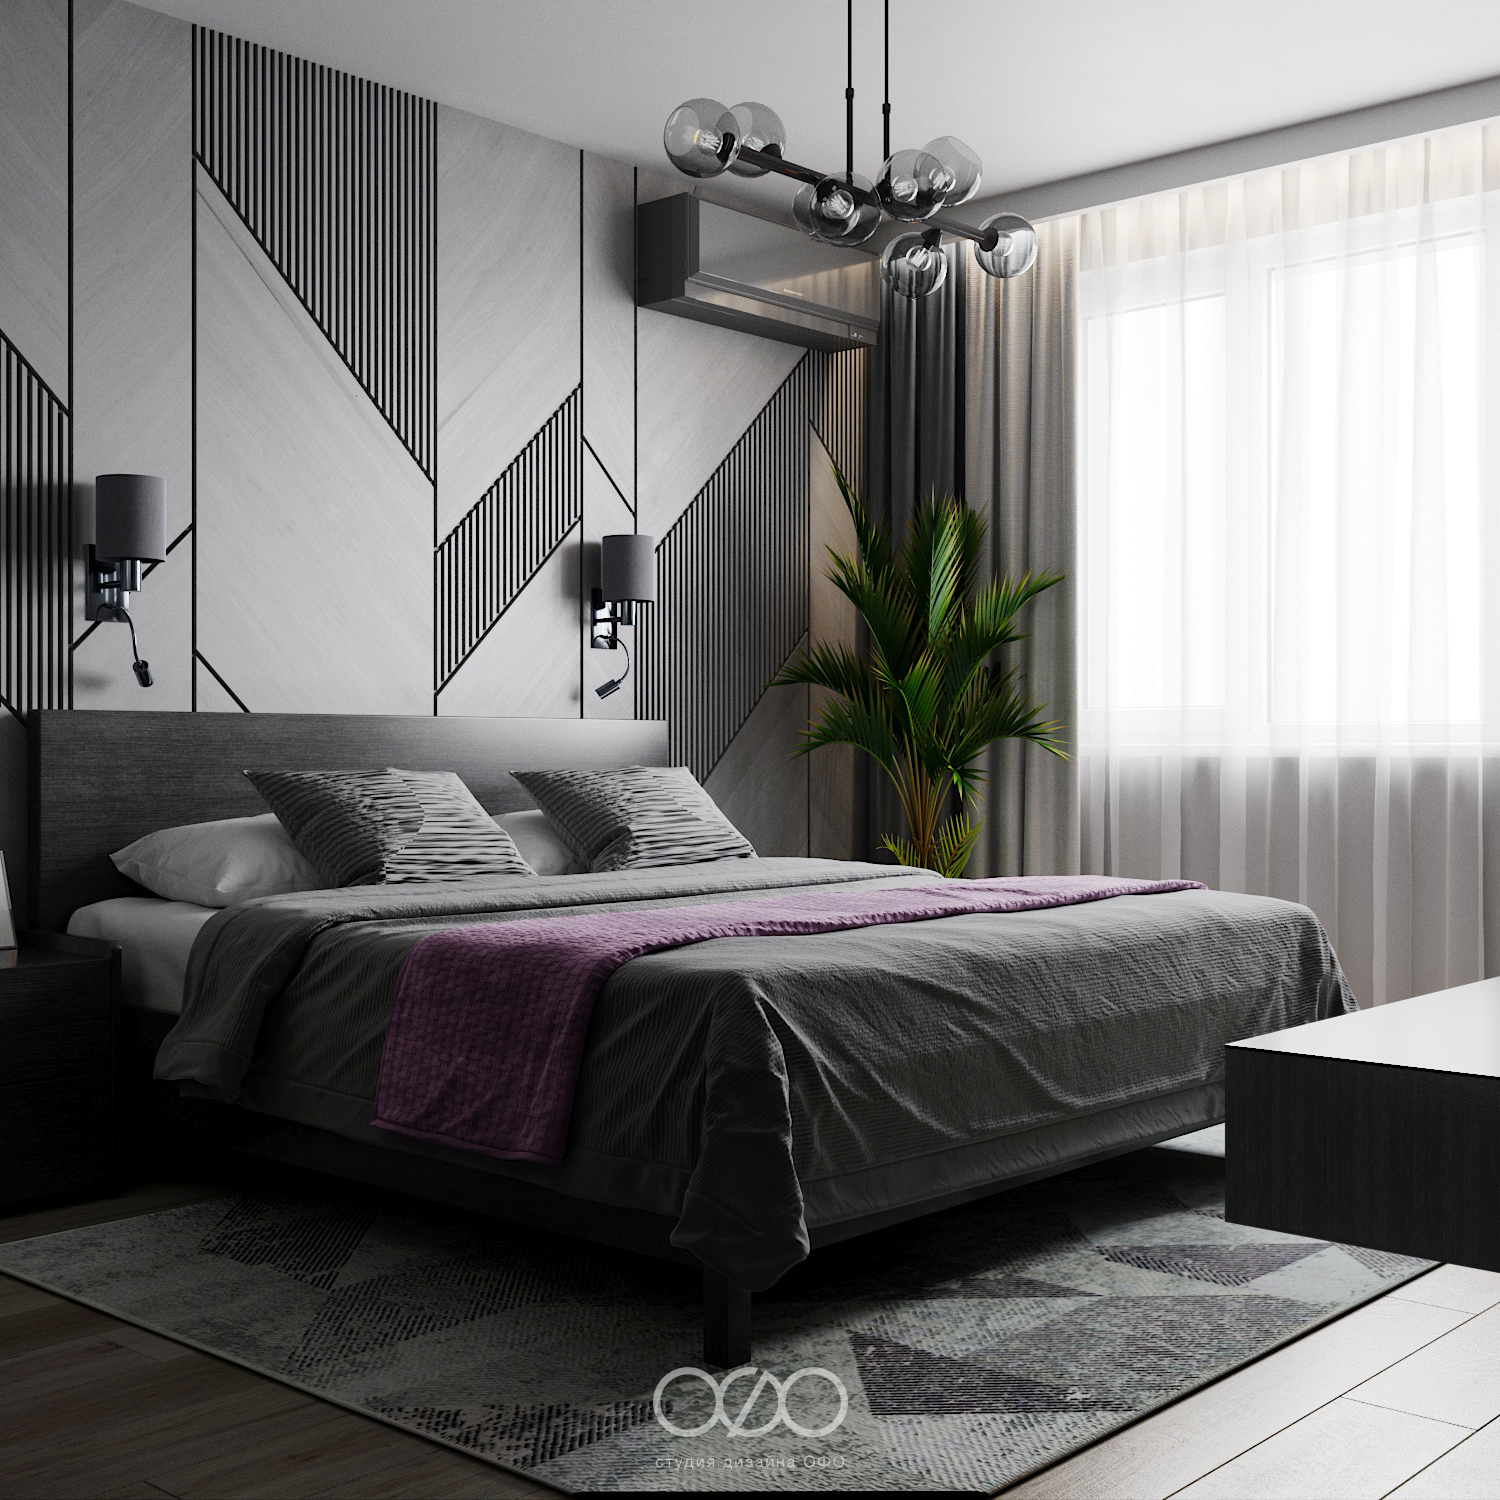 Цвет в дизайне спальни